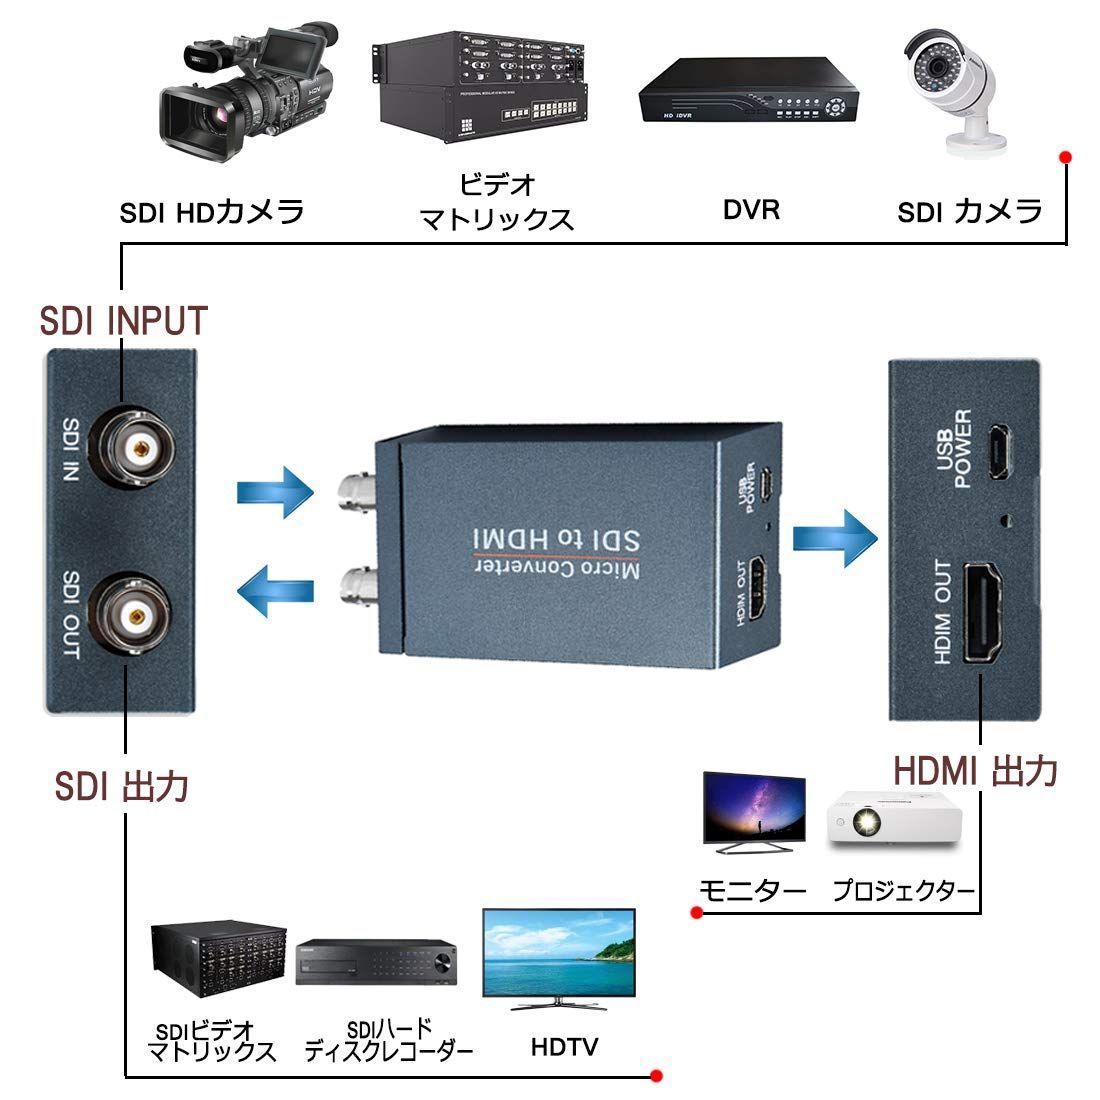 SDI to HDMI コンバーター sdi hdmi 変換器 3G-SDI/HD-SDI/SD-SDI to